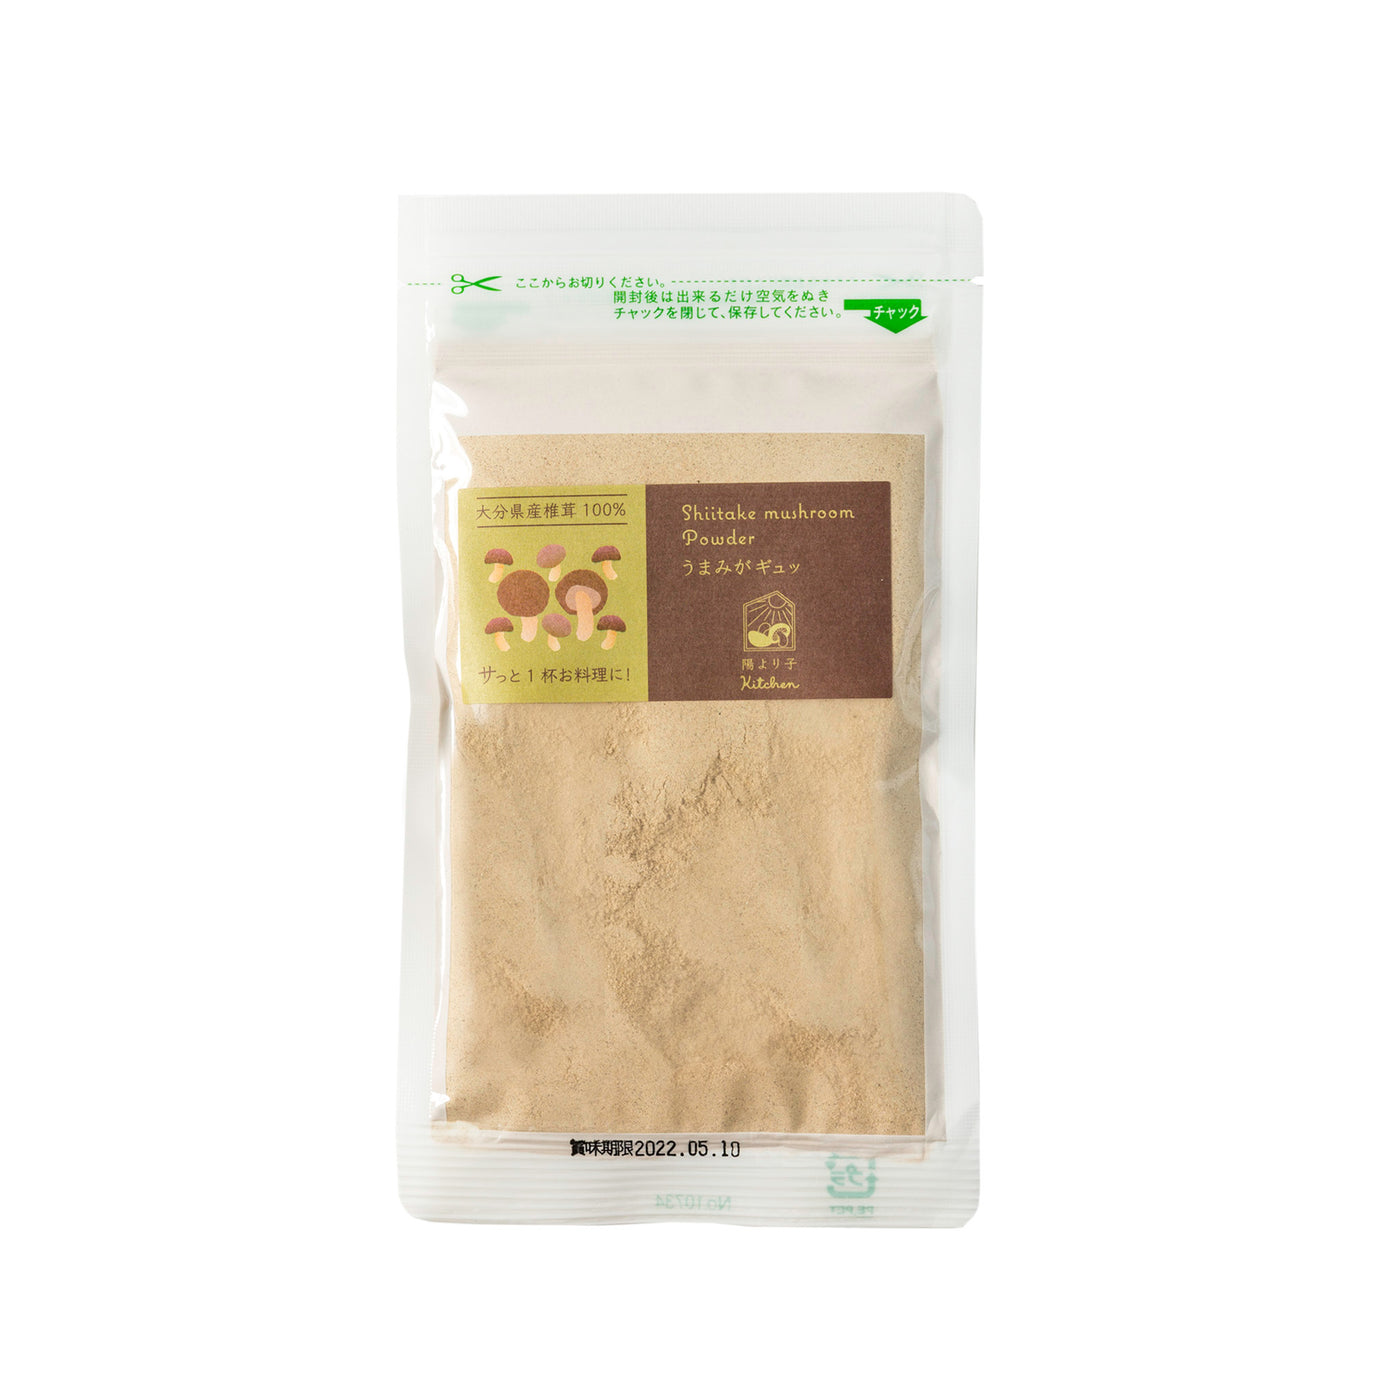 Dried Shiitake Mushroom Powder - 50g